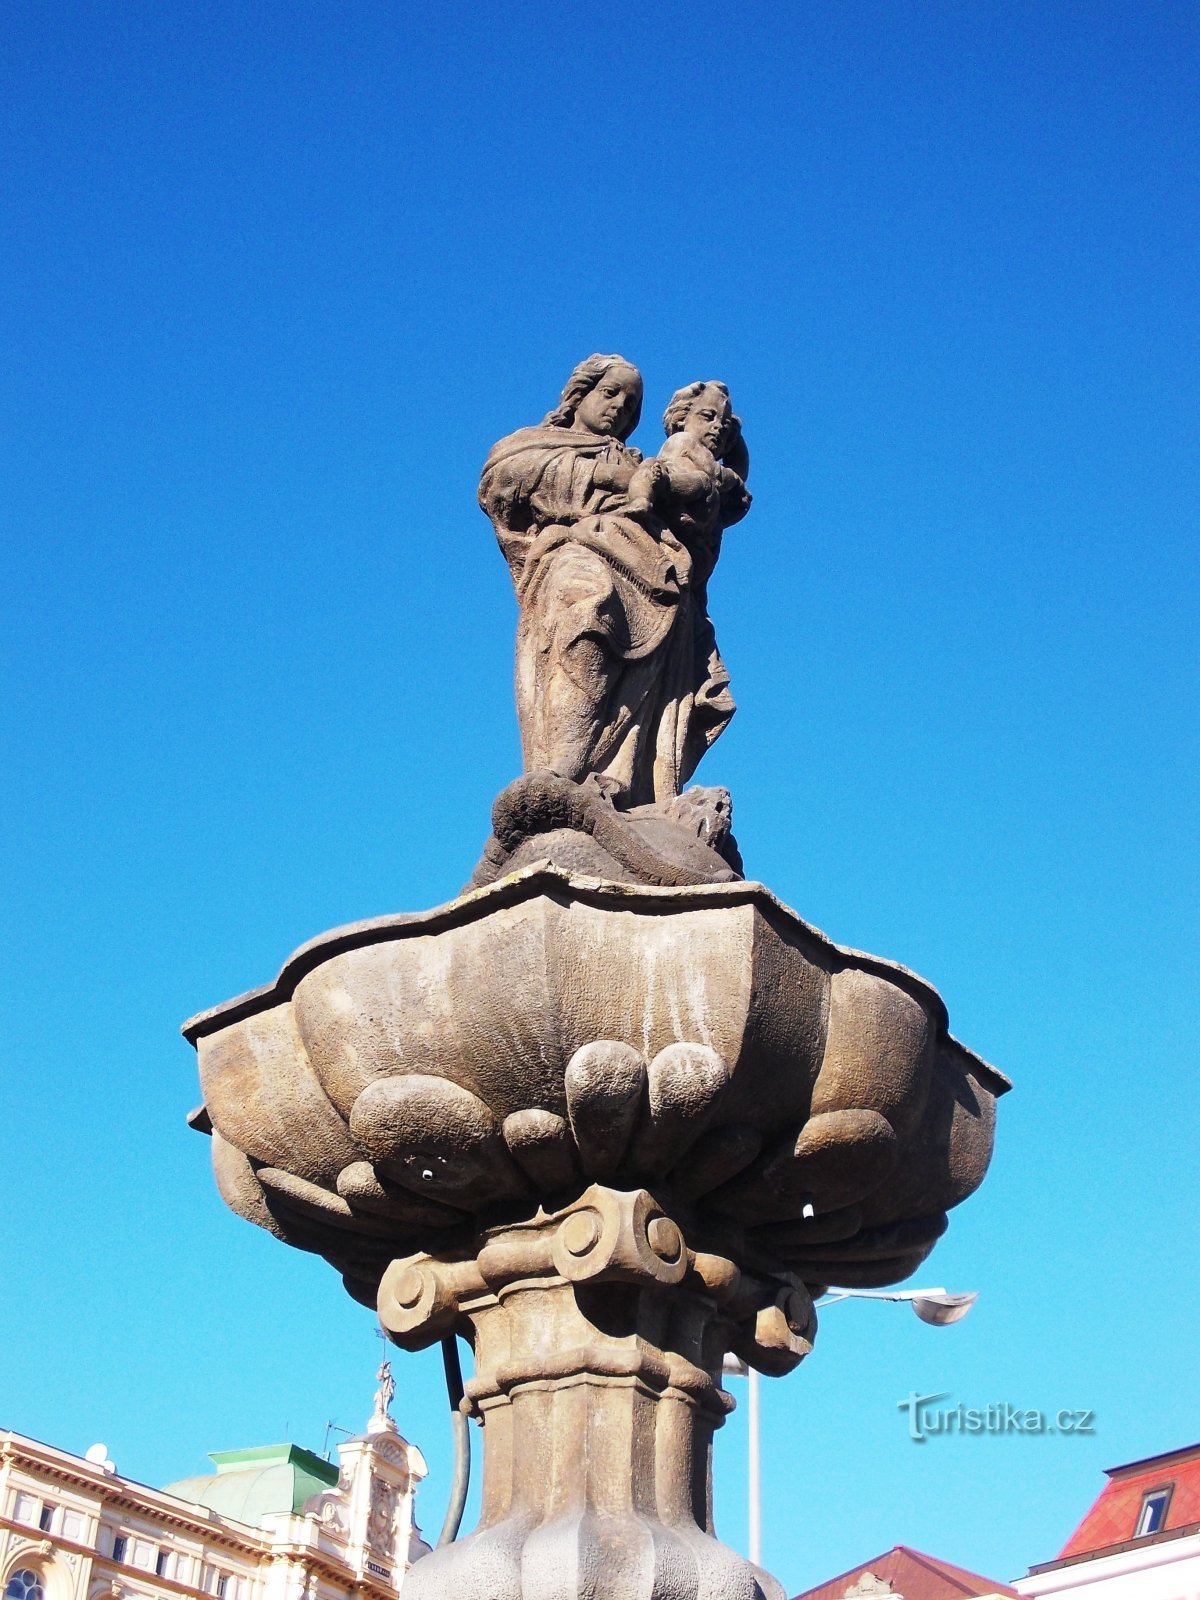 ένα σιντριβάνι με ένα άγαλμα